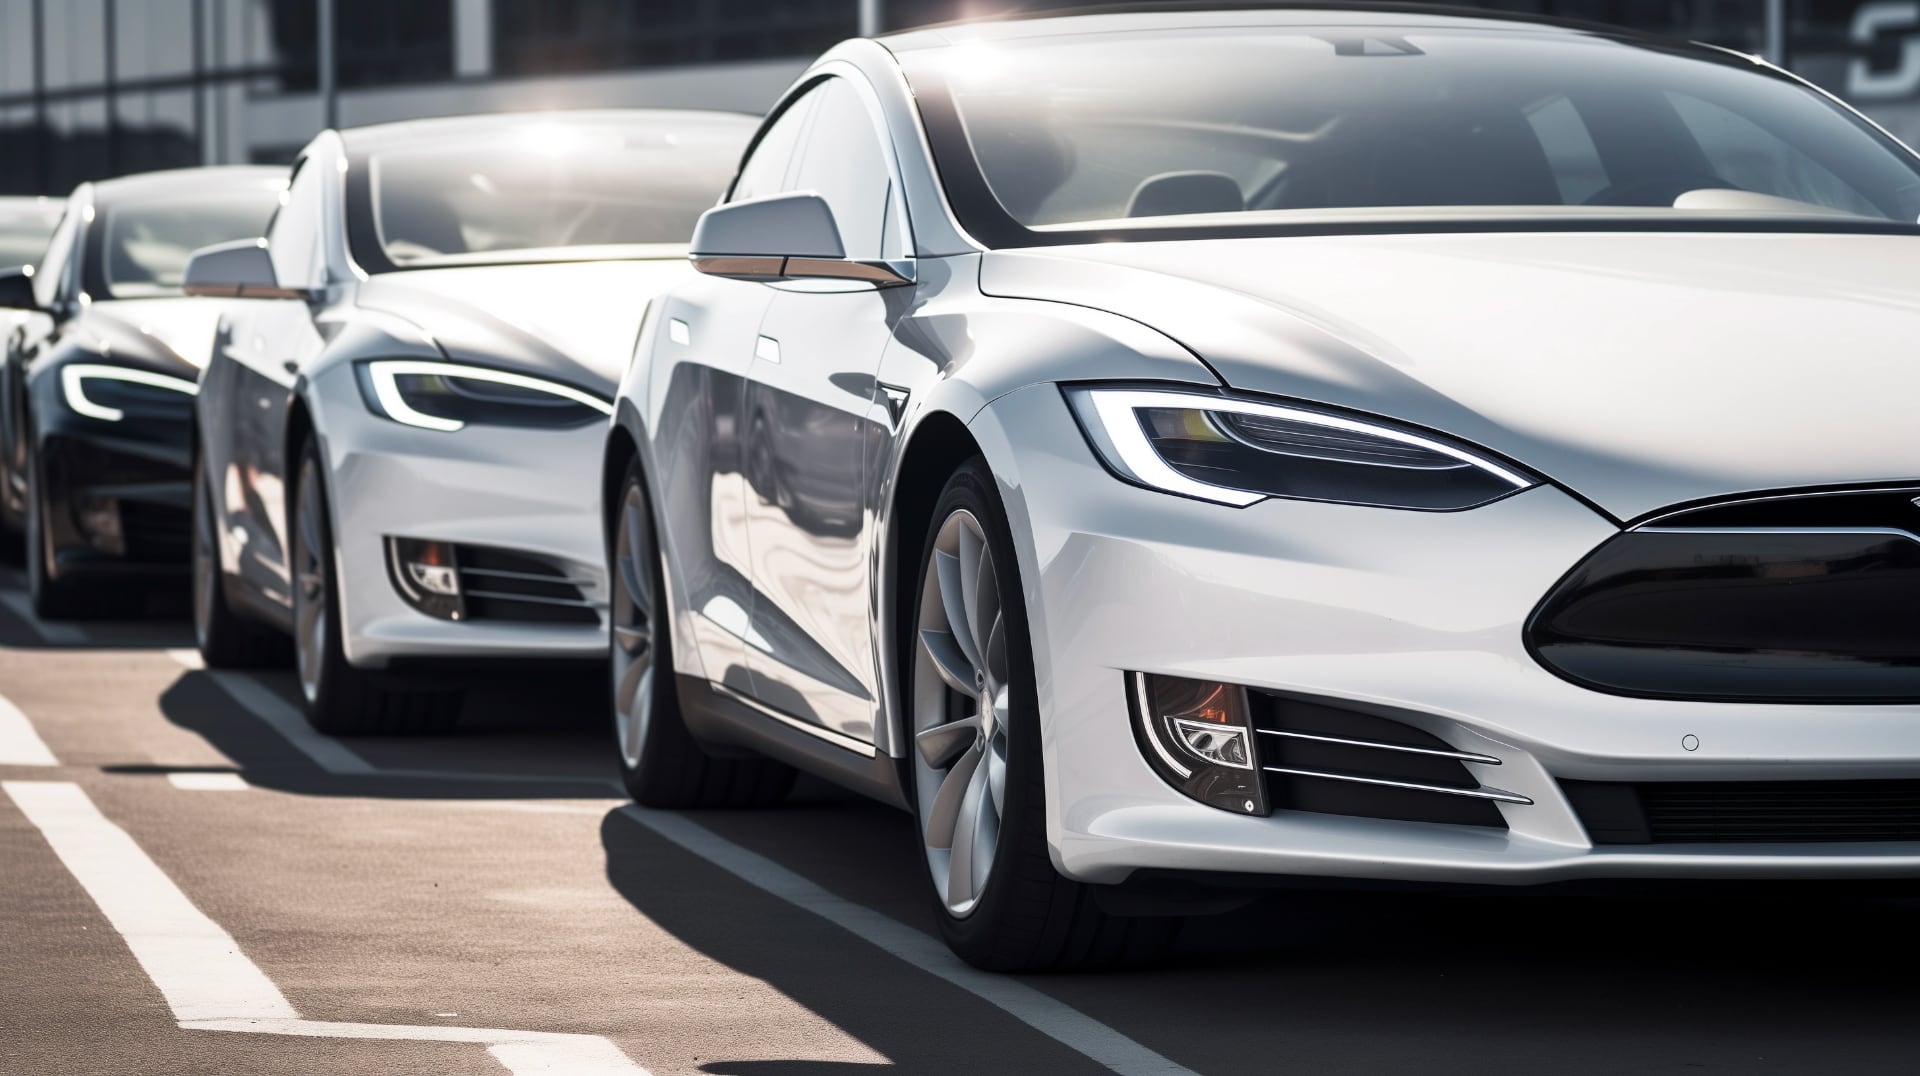 Tesla ruft 120.000 Fahrzeuge in den USA wegen Türsicherheitsproblemen zurück